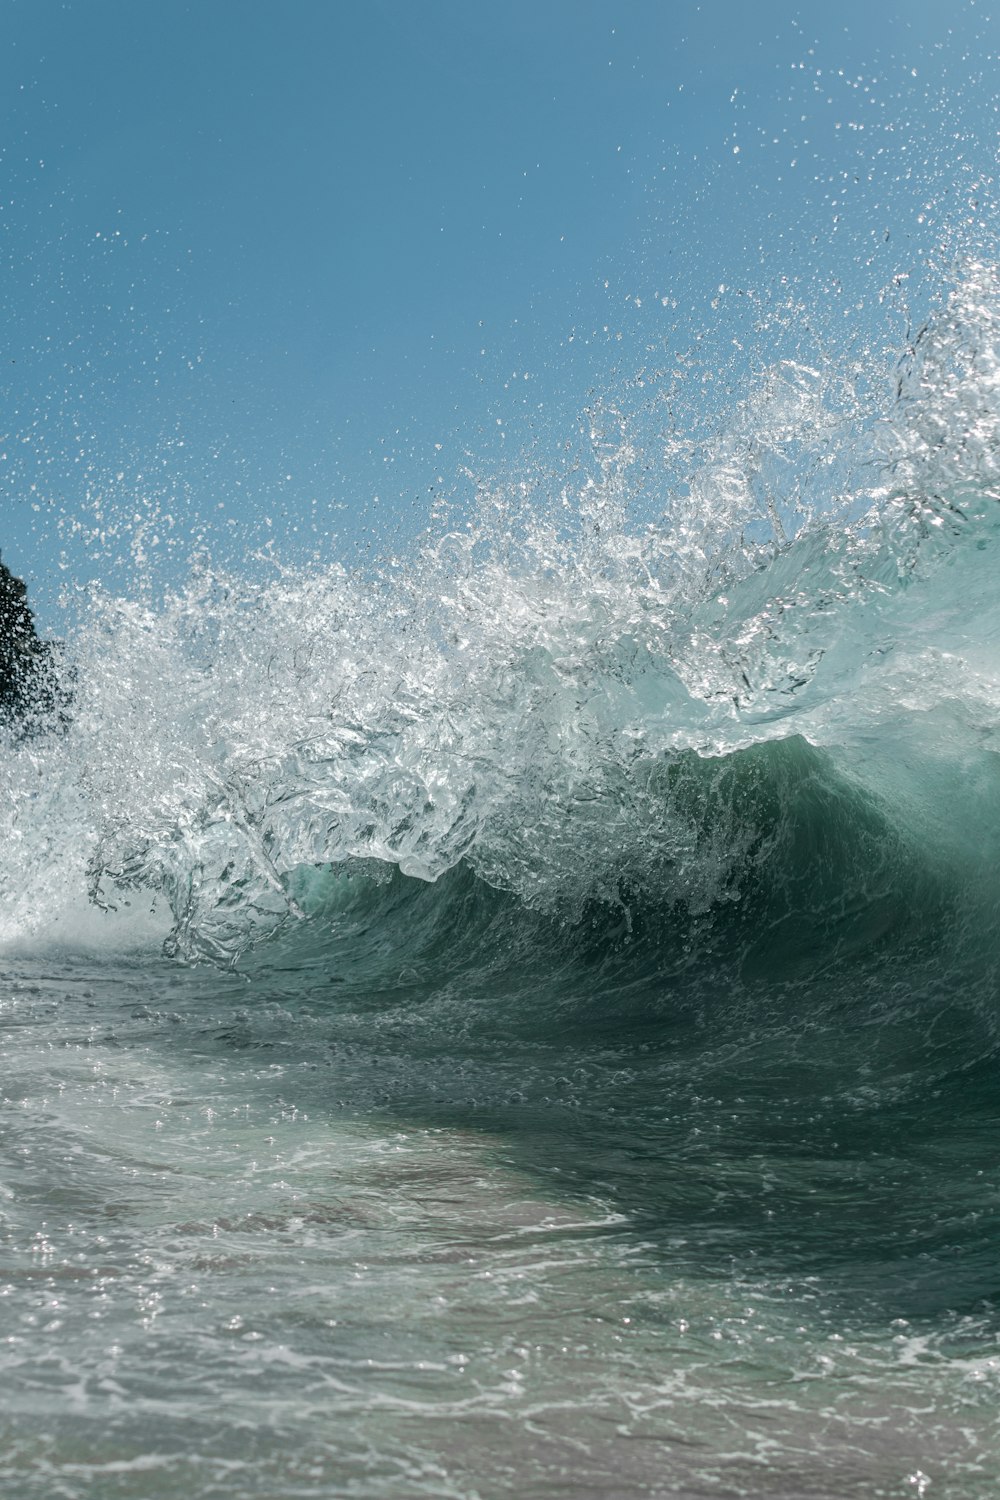 Photographie en accéléré d’une vague de mer éclaboussante